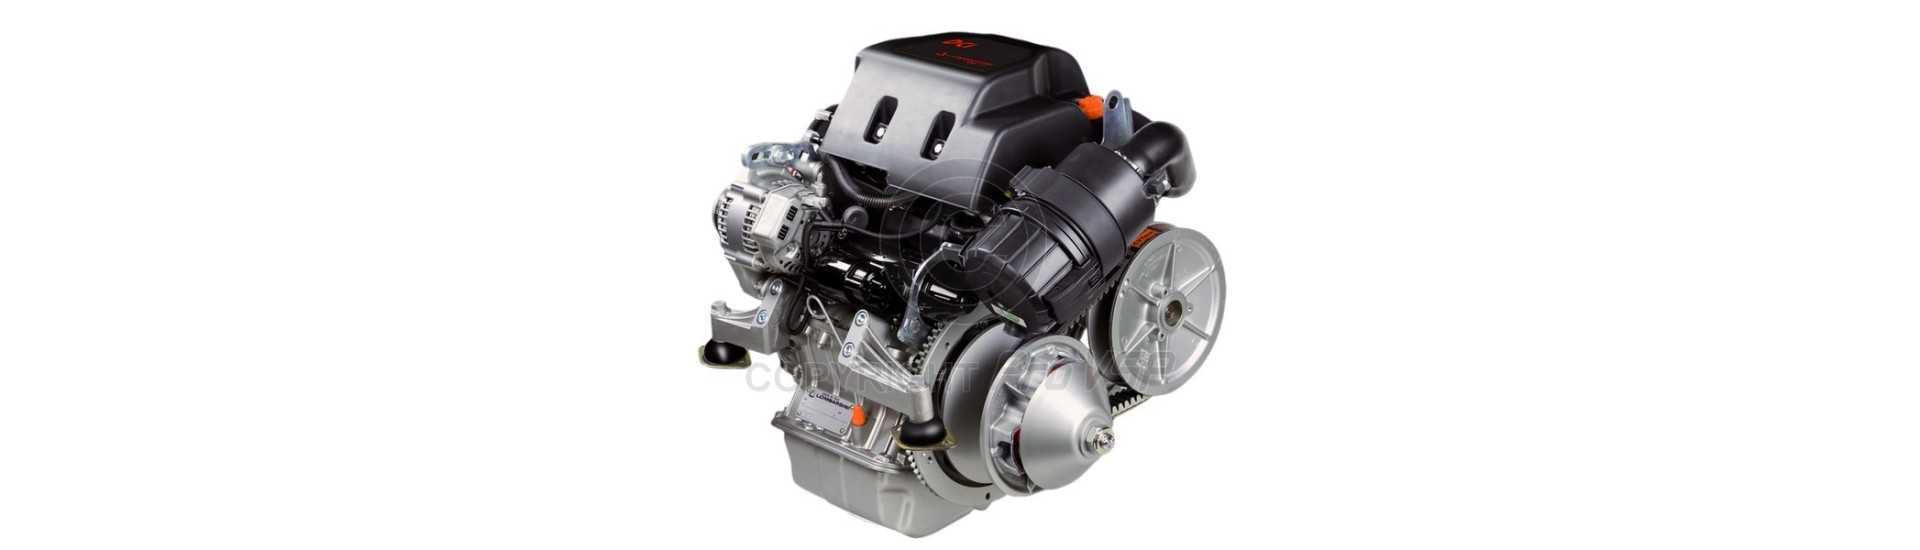 Pièces moteur Lombardini DCi LDW442 LDW492 LDW480 HDi pour voiture sans permis